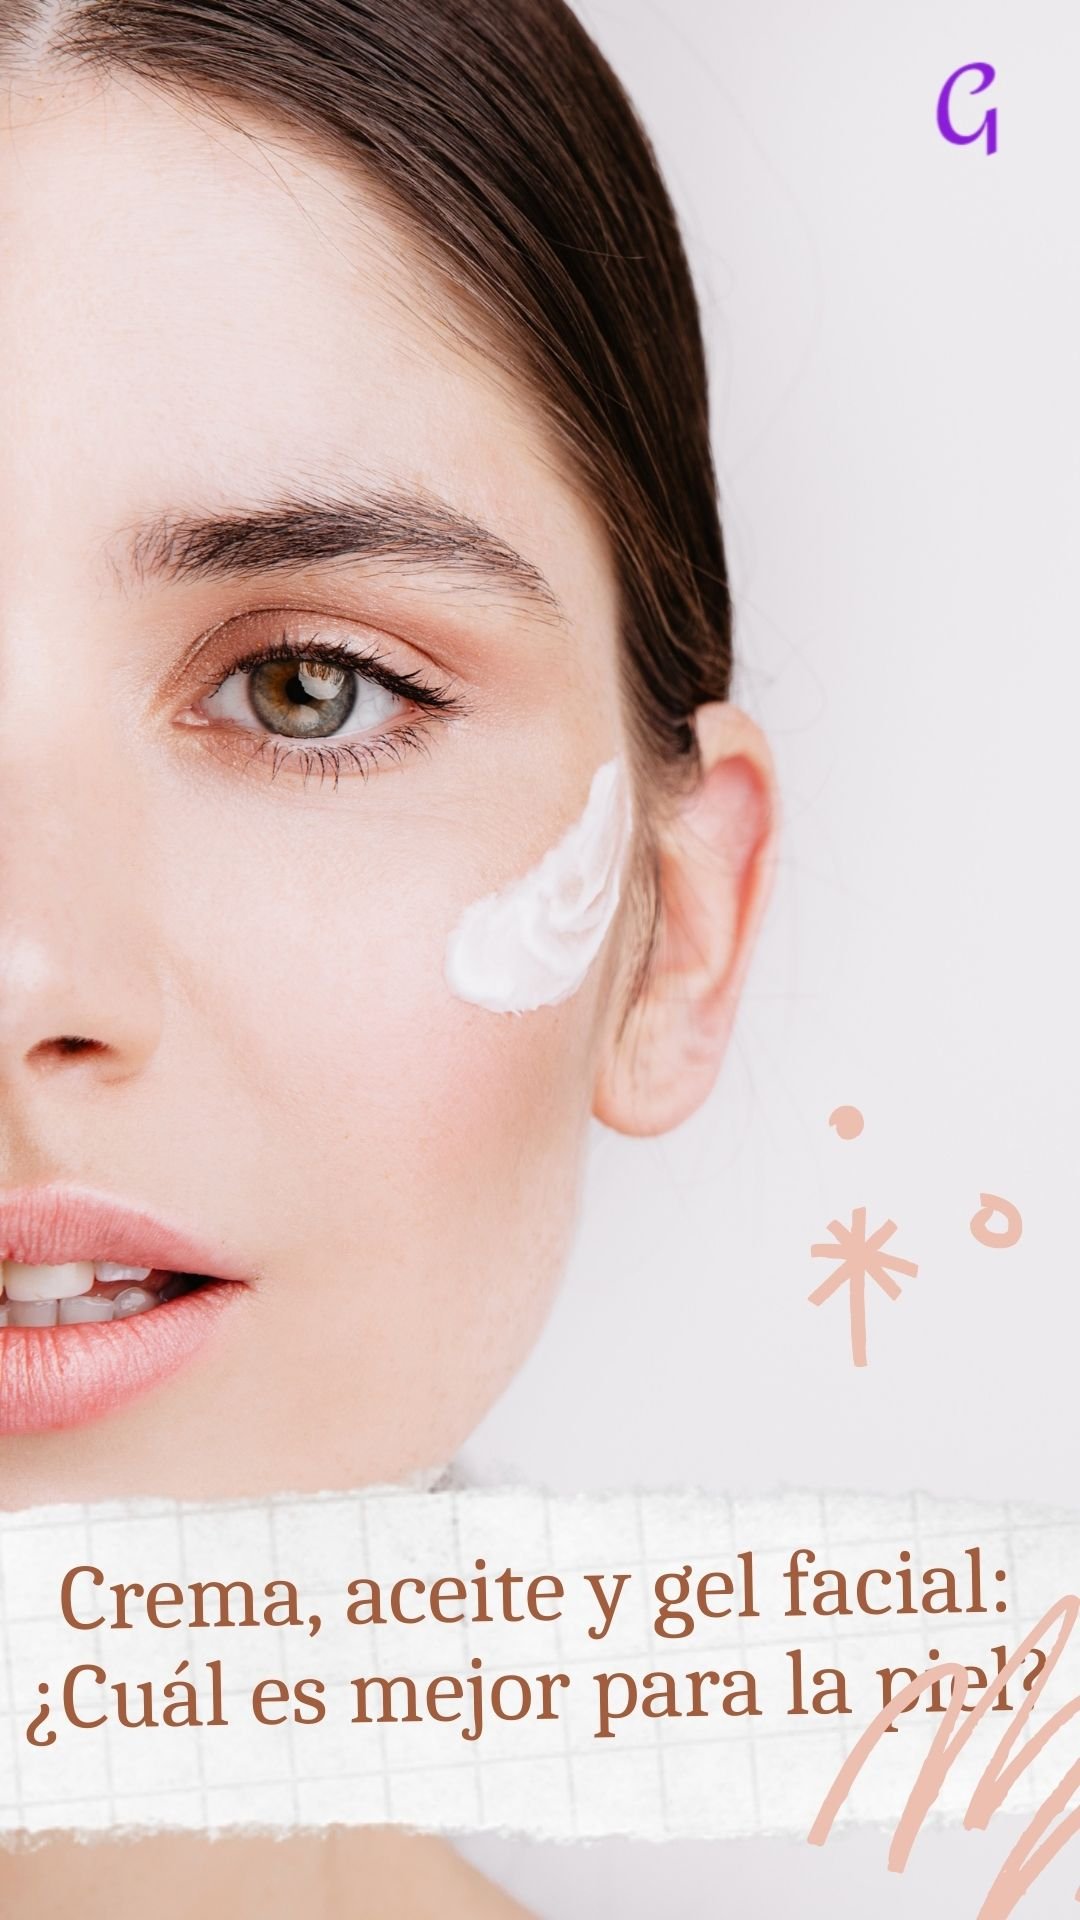 Crema, aceite y gel facial: ¿Cuál es mejor para la piel?